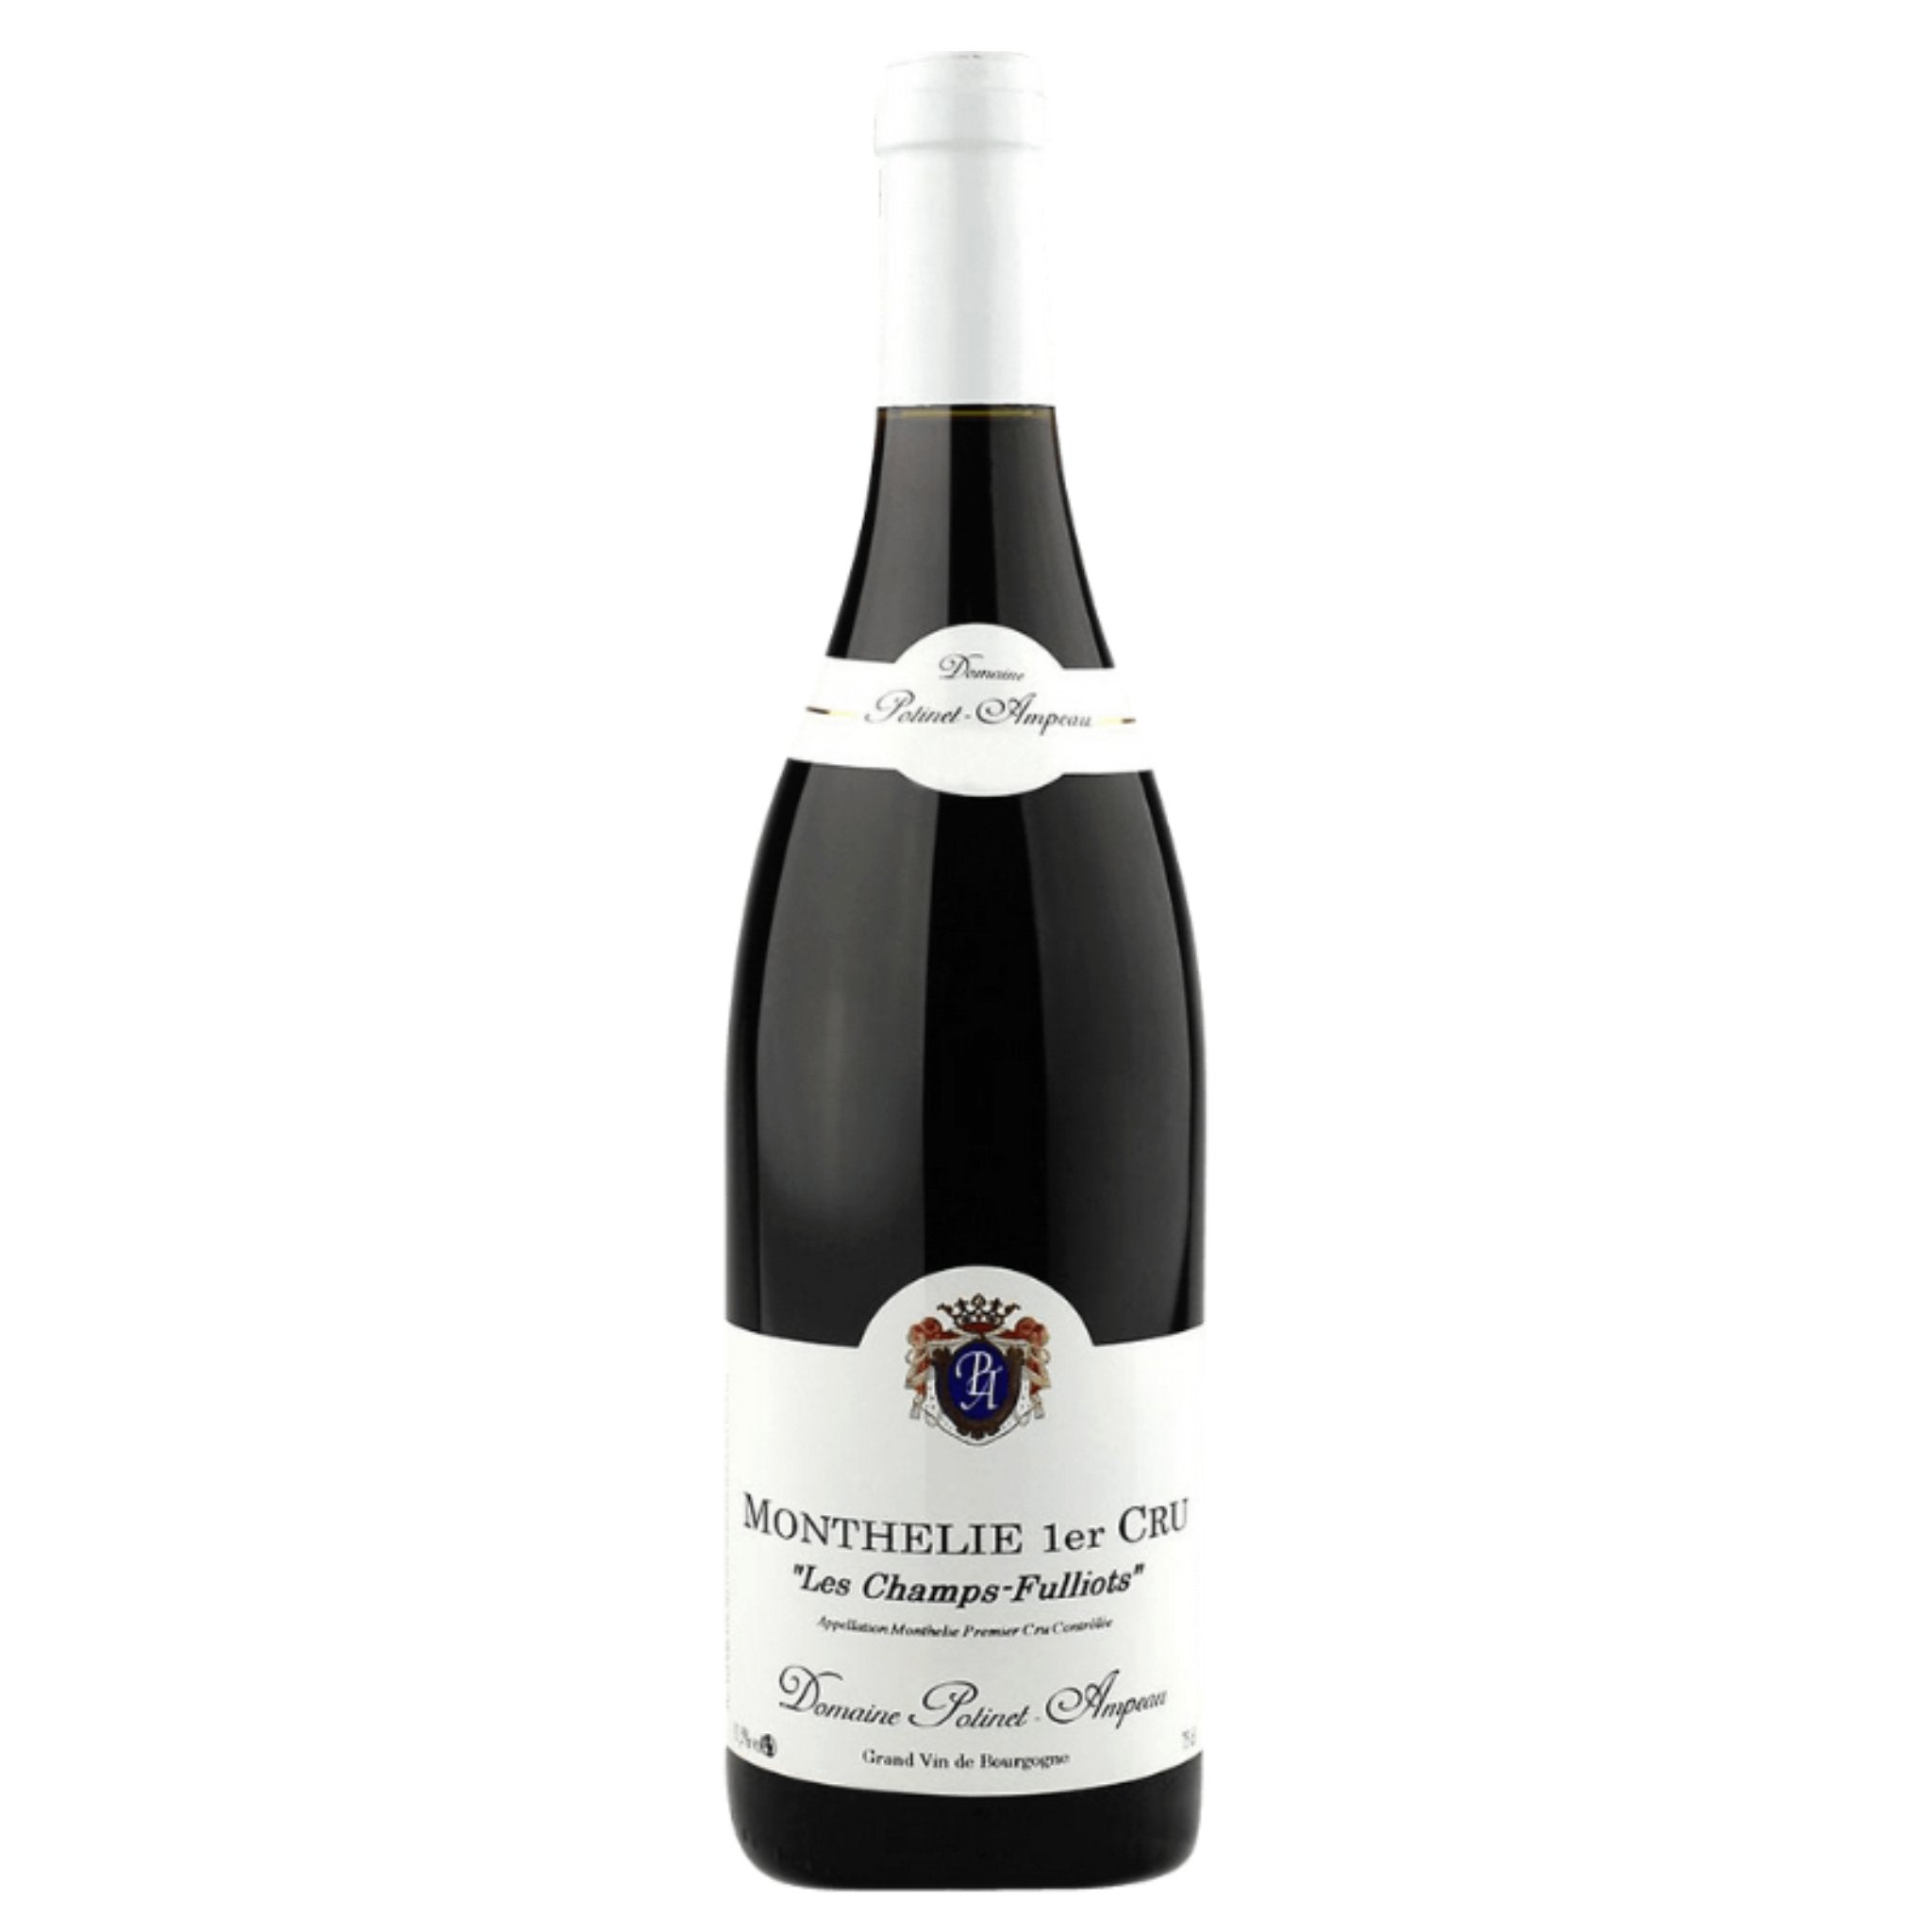 Domaine Potinet-Ampeau – Grand Vin Pte Ltd